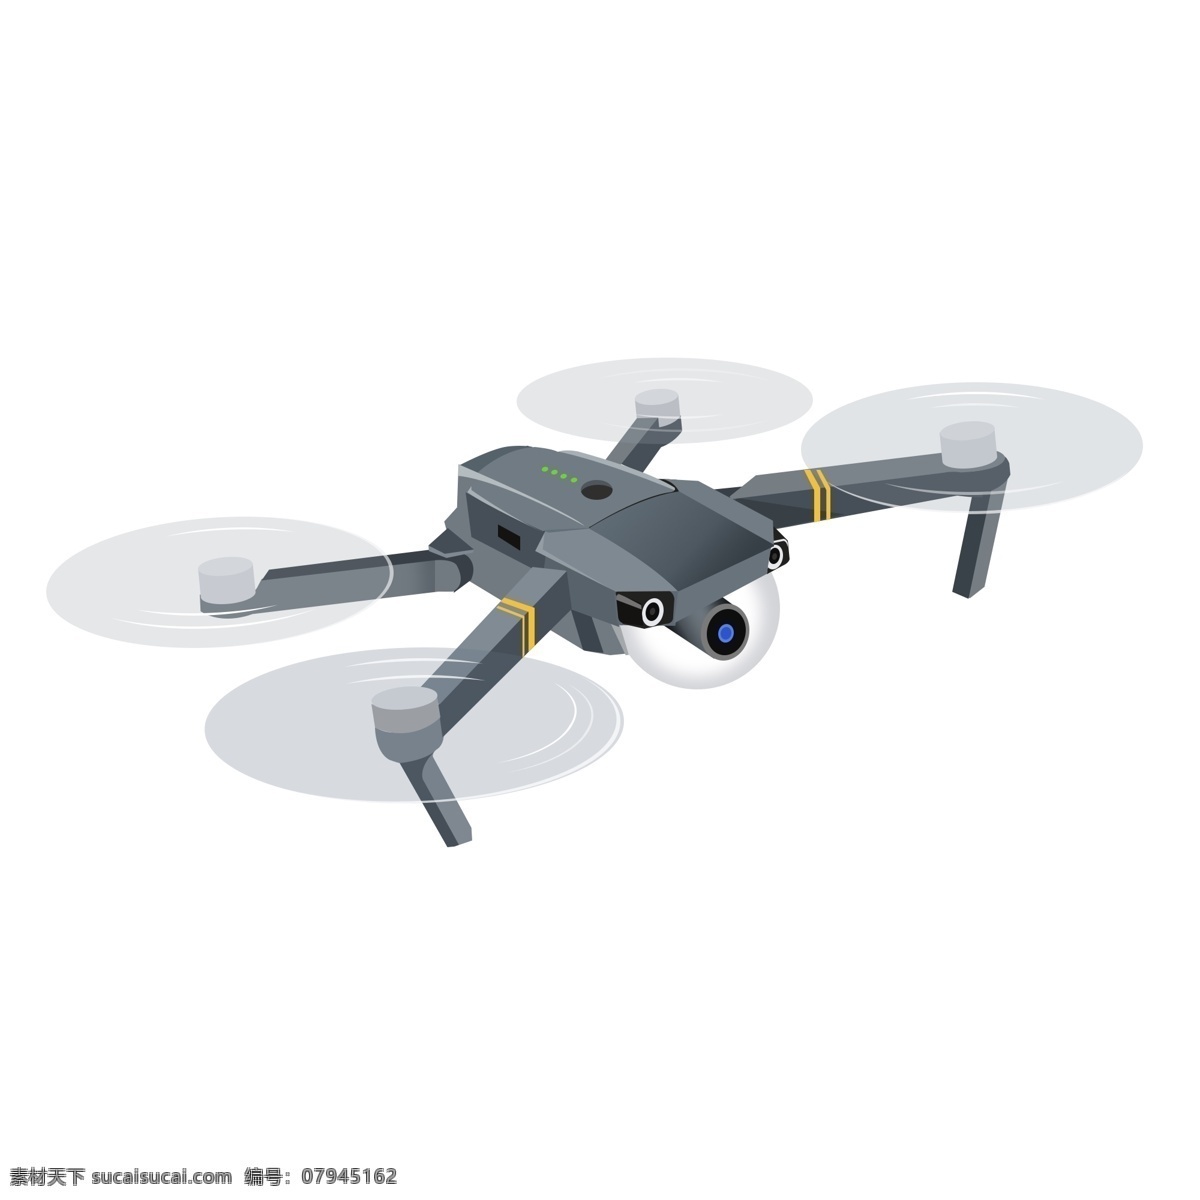 大 疆 无人机 高清 矢量图 飞行 智能 摄像 科技 遥控 大疆无人机 矢量无人机 无人驾驶